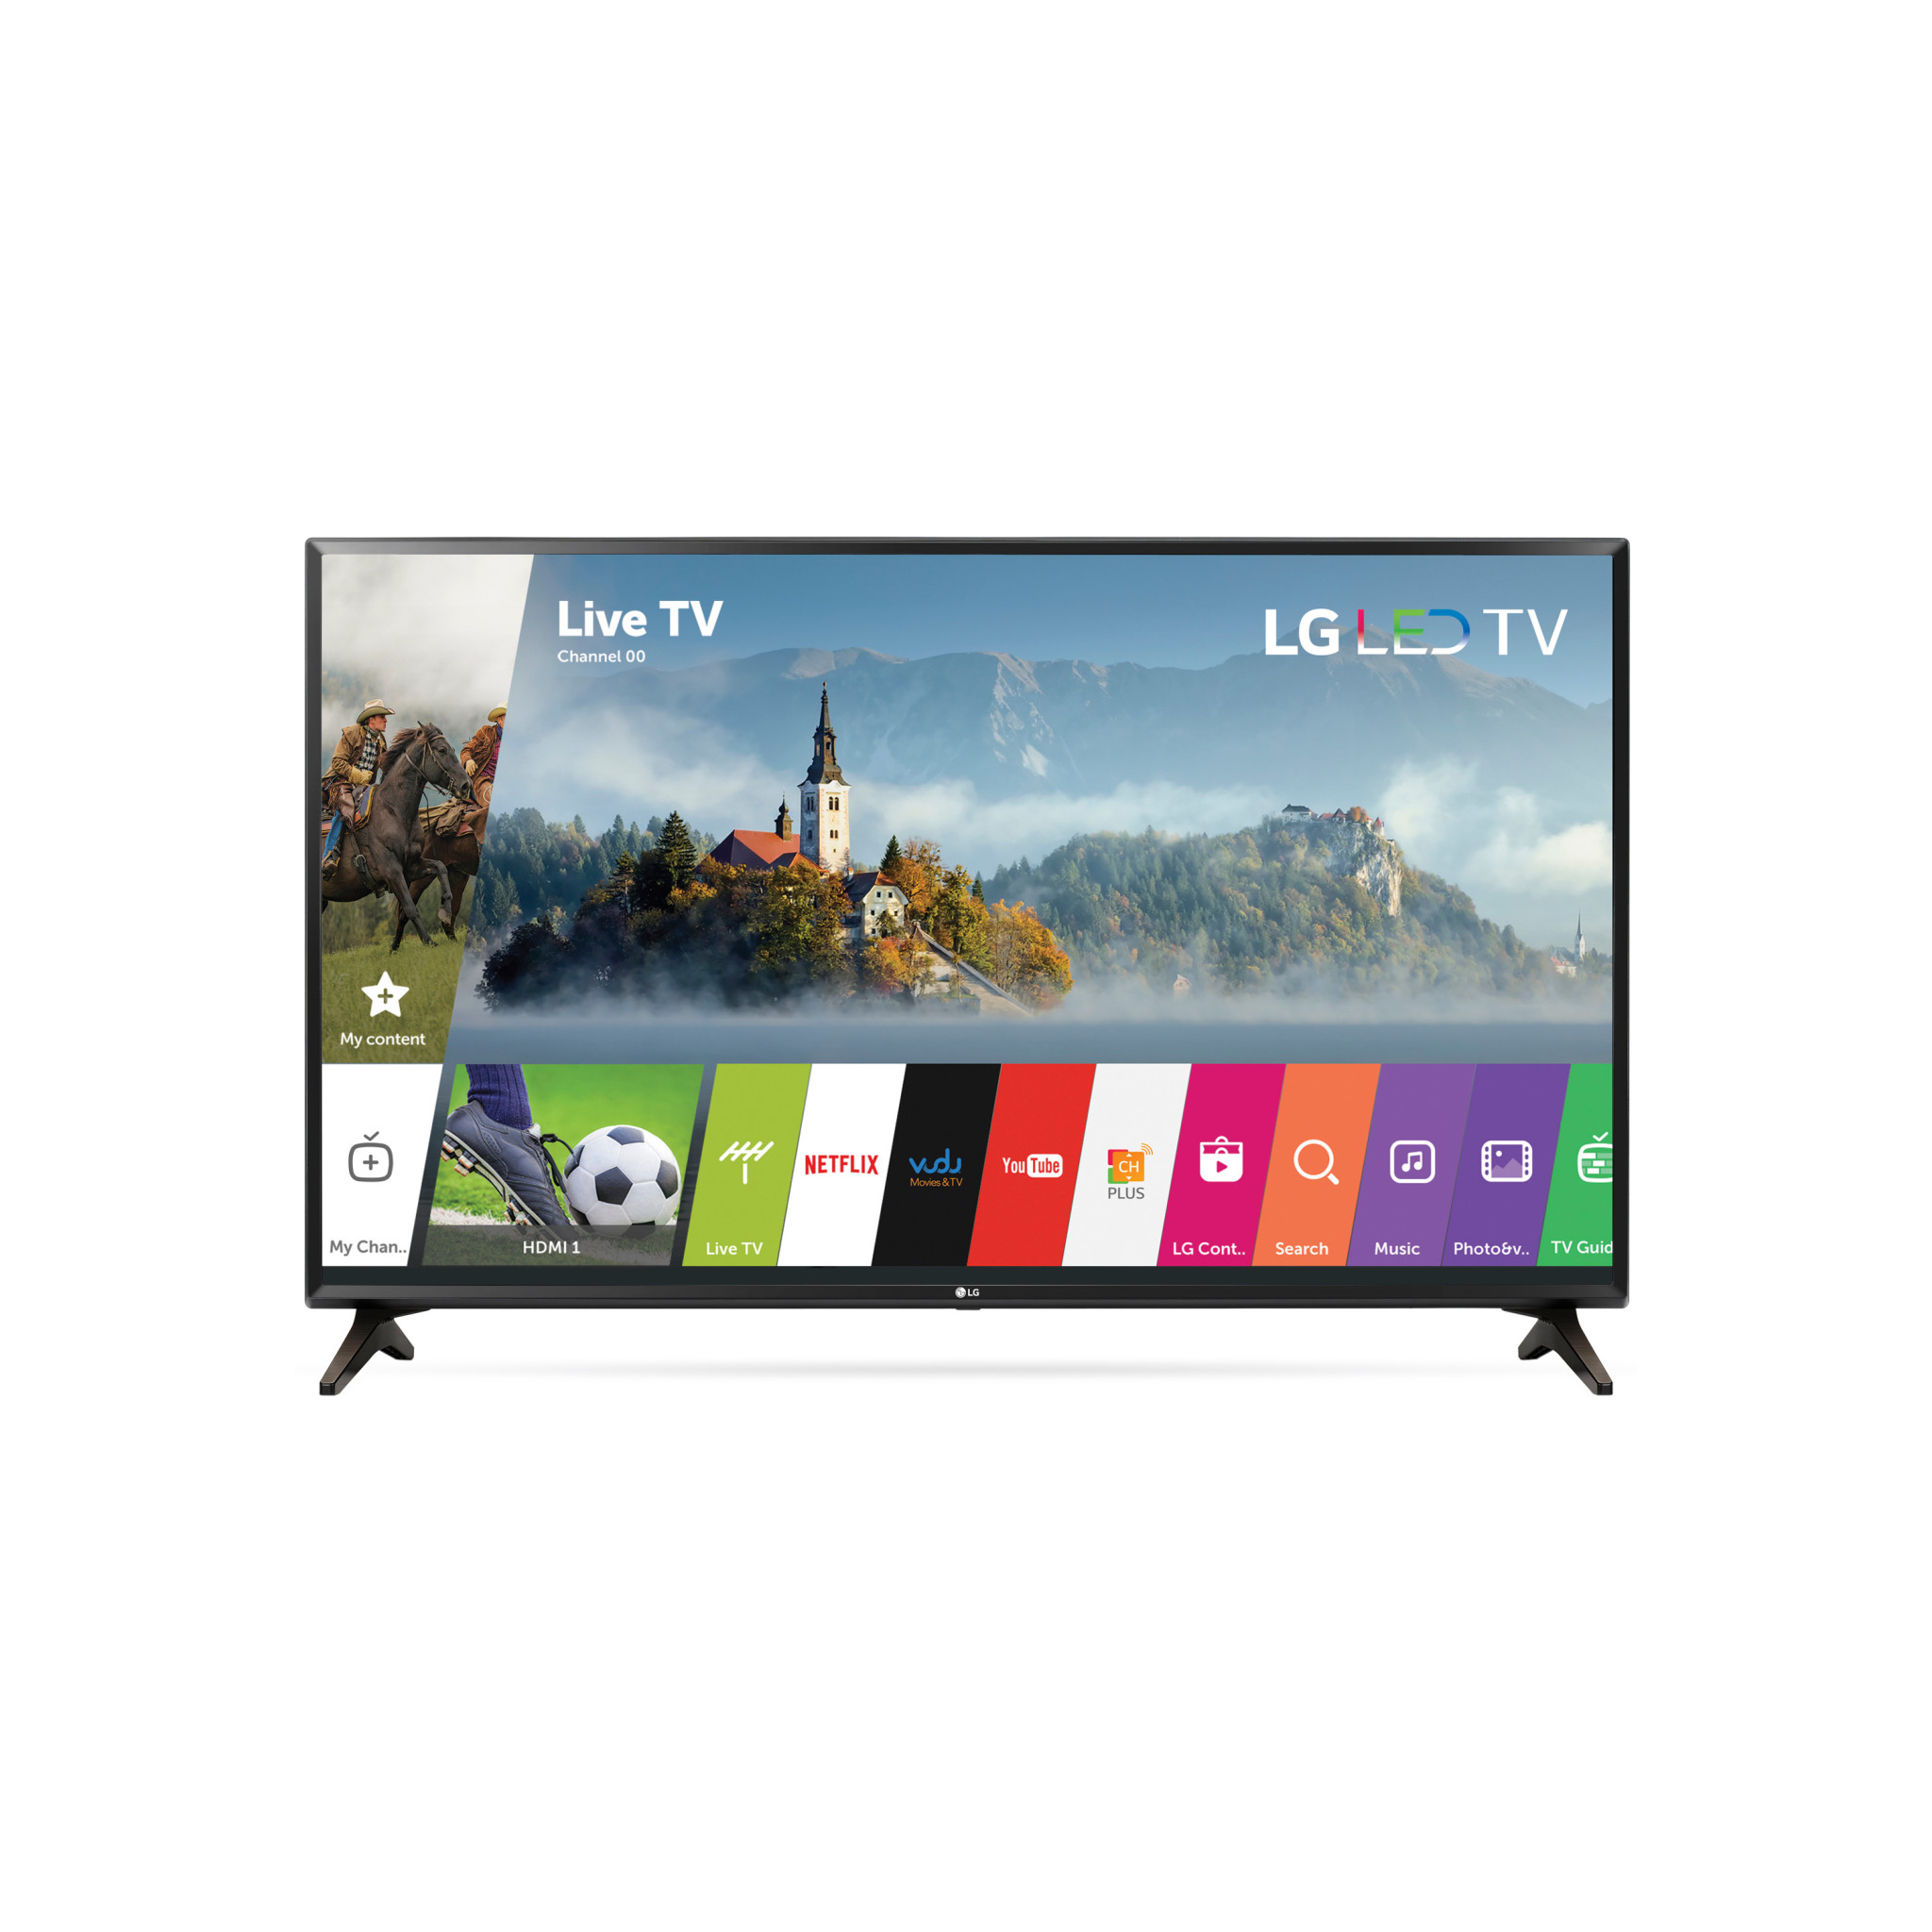 LG 32LJ550B: 32-inch HD 720p Smart LED TV